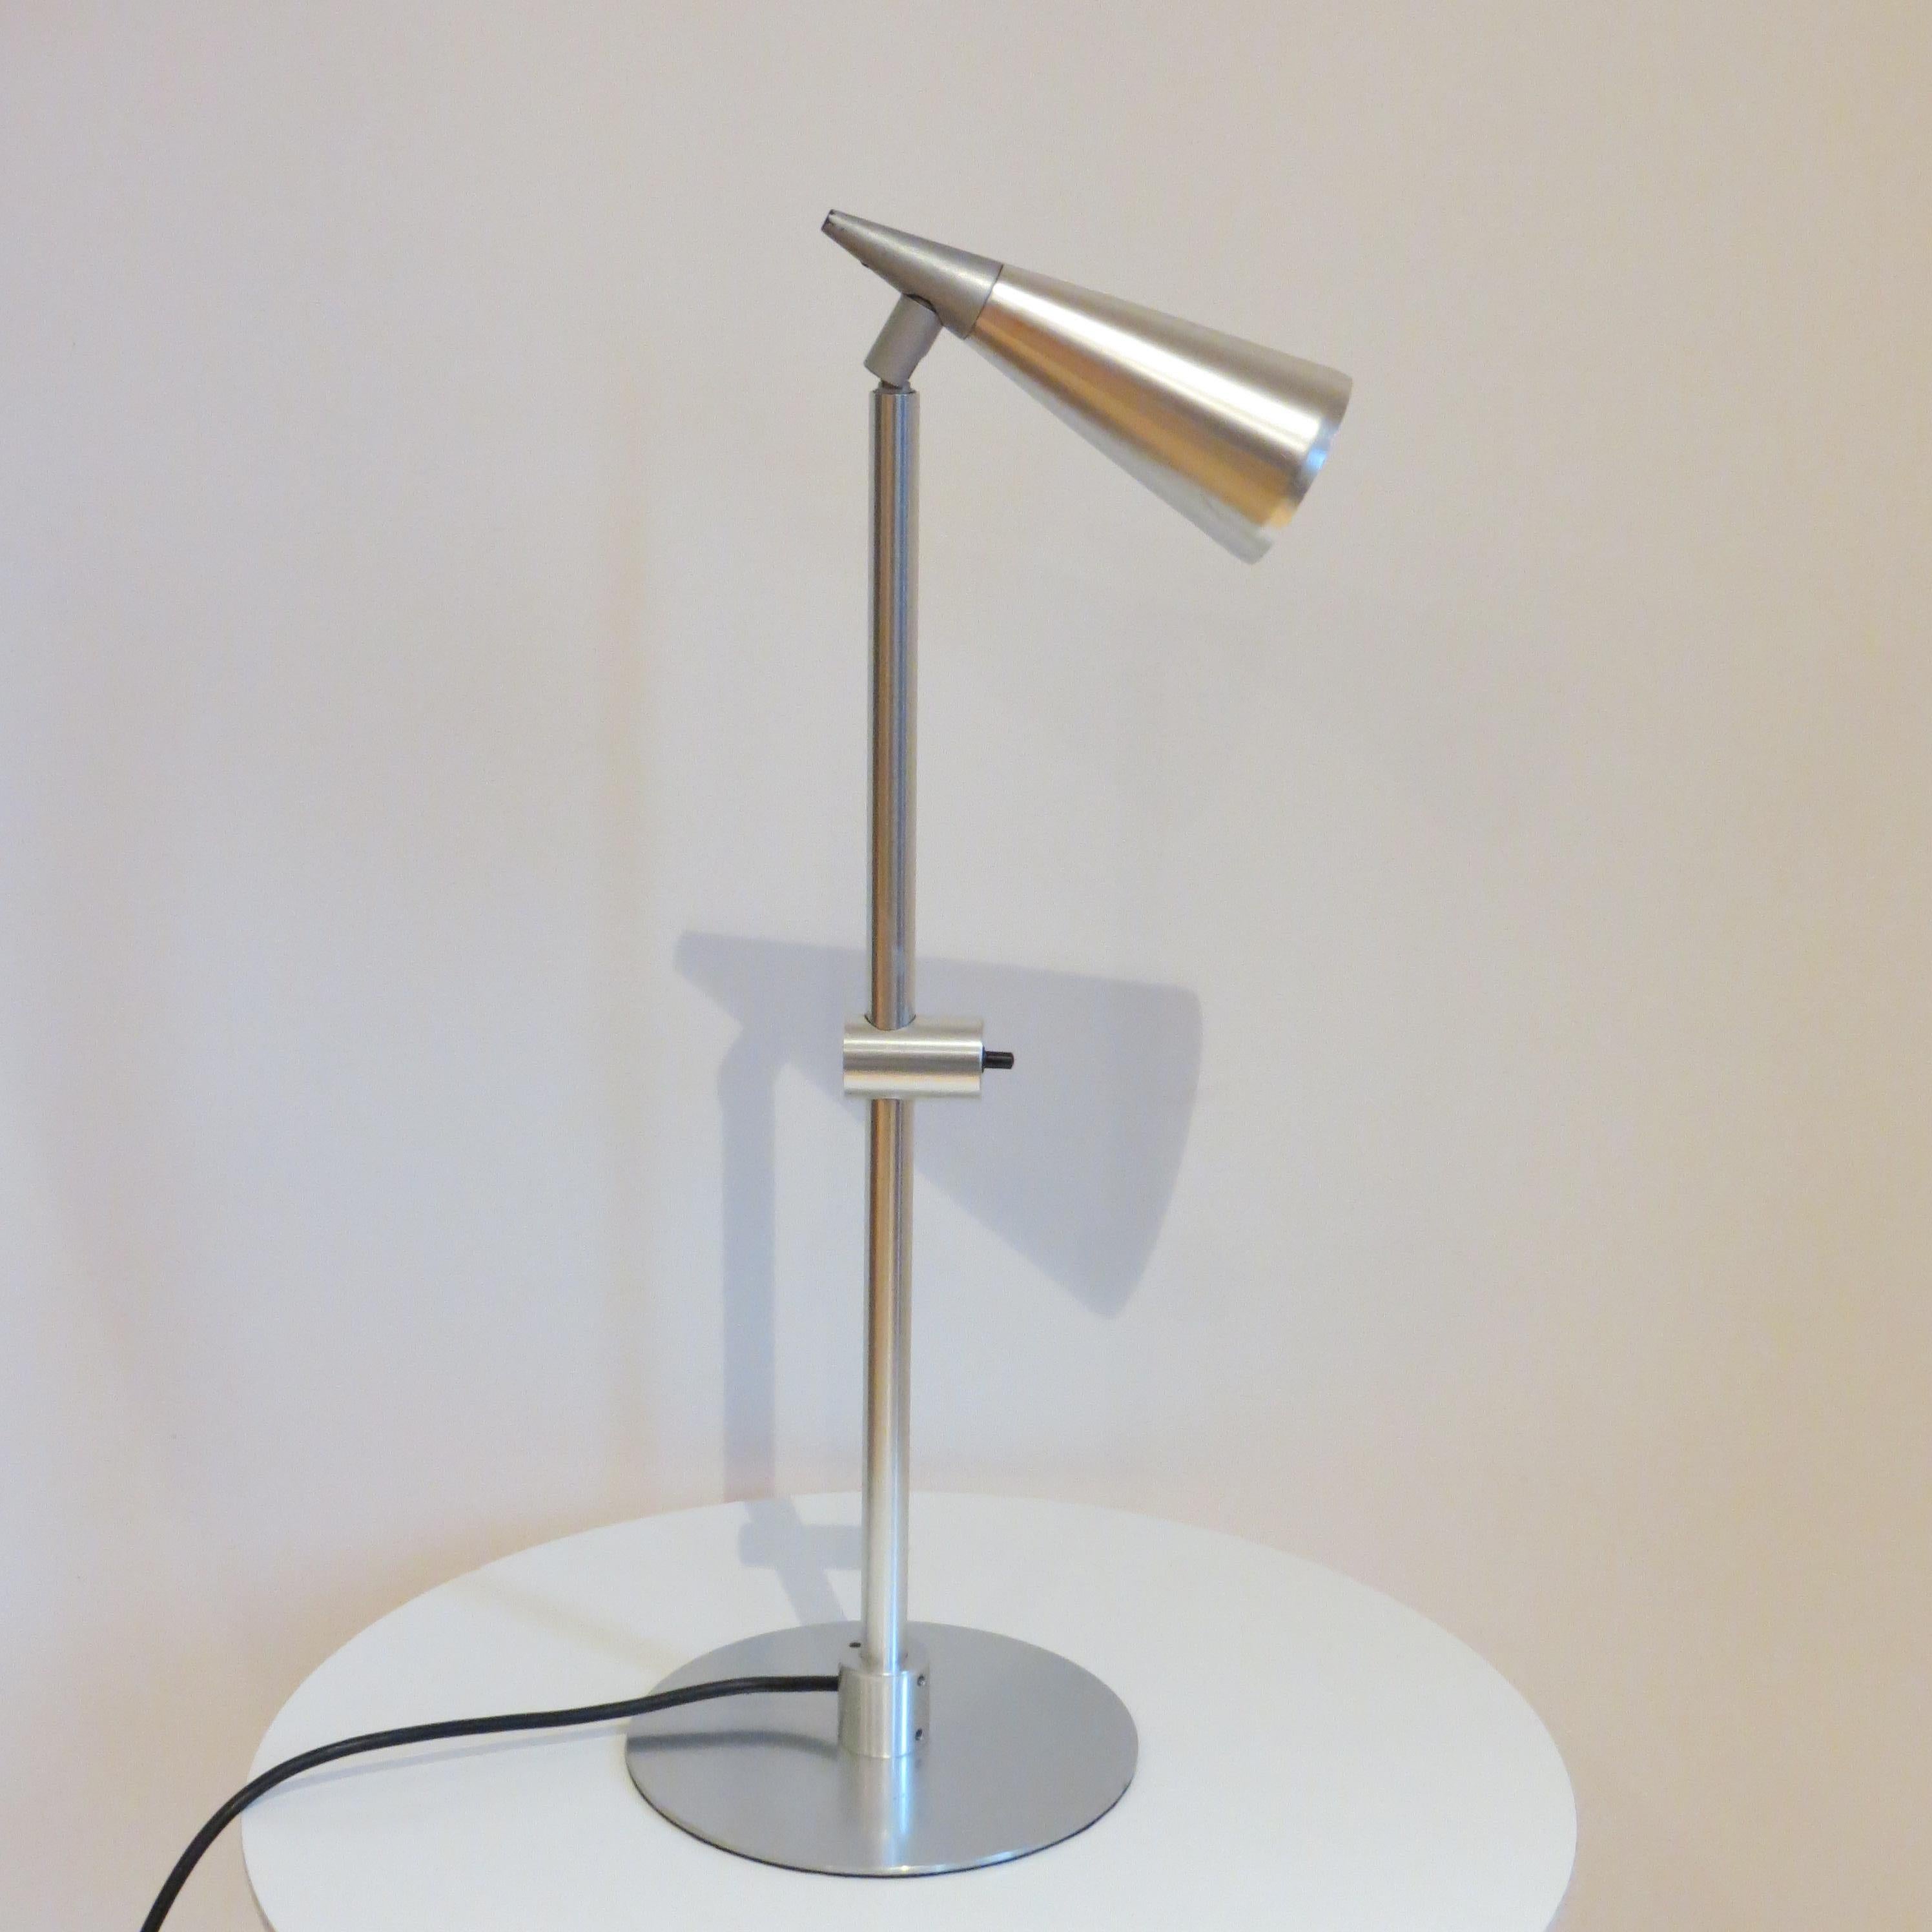 Très rare lampe de bureau unique  Il s'agit d'une lampe prototype - une pièce unique - conçue par Peter Nelson et fabriquée par Architectural Lighting Ltd.  
Une belle lampe de très bonne qualité, bien conçue, fabriquée en aluminium avec un boîtier